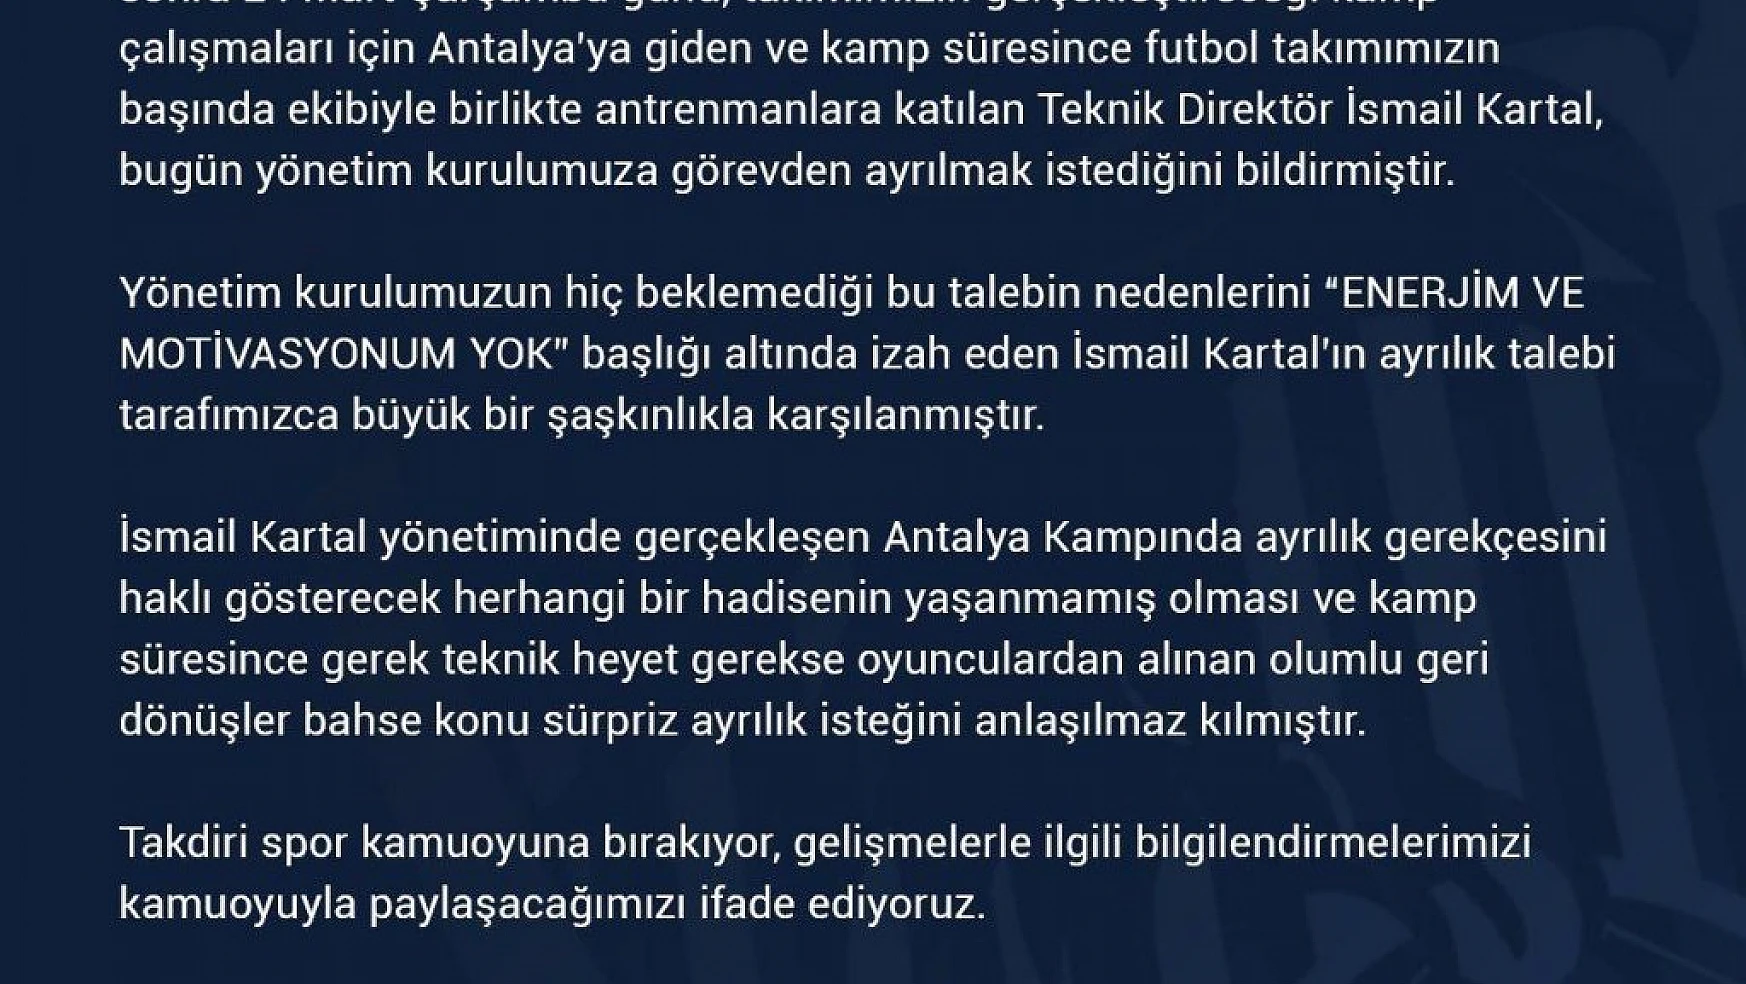 İsmail Kartal Fenerbahçe'nin başına mı geçiyor?